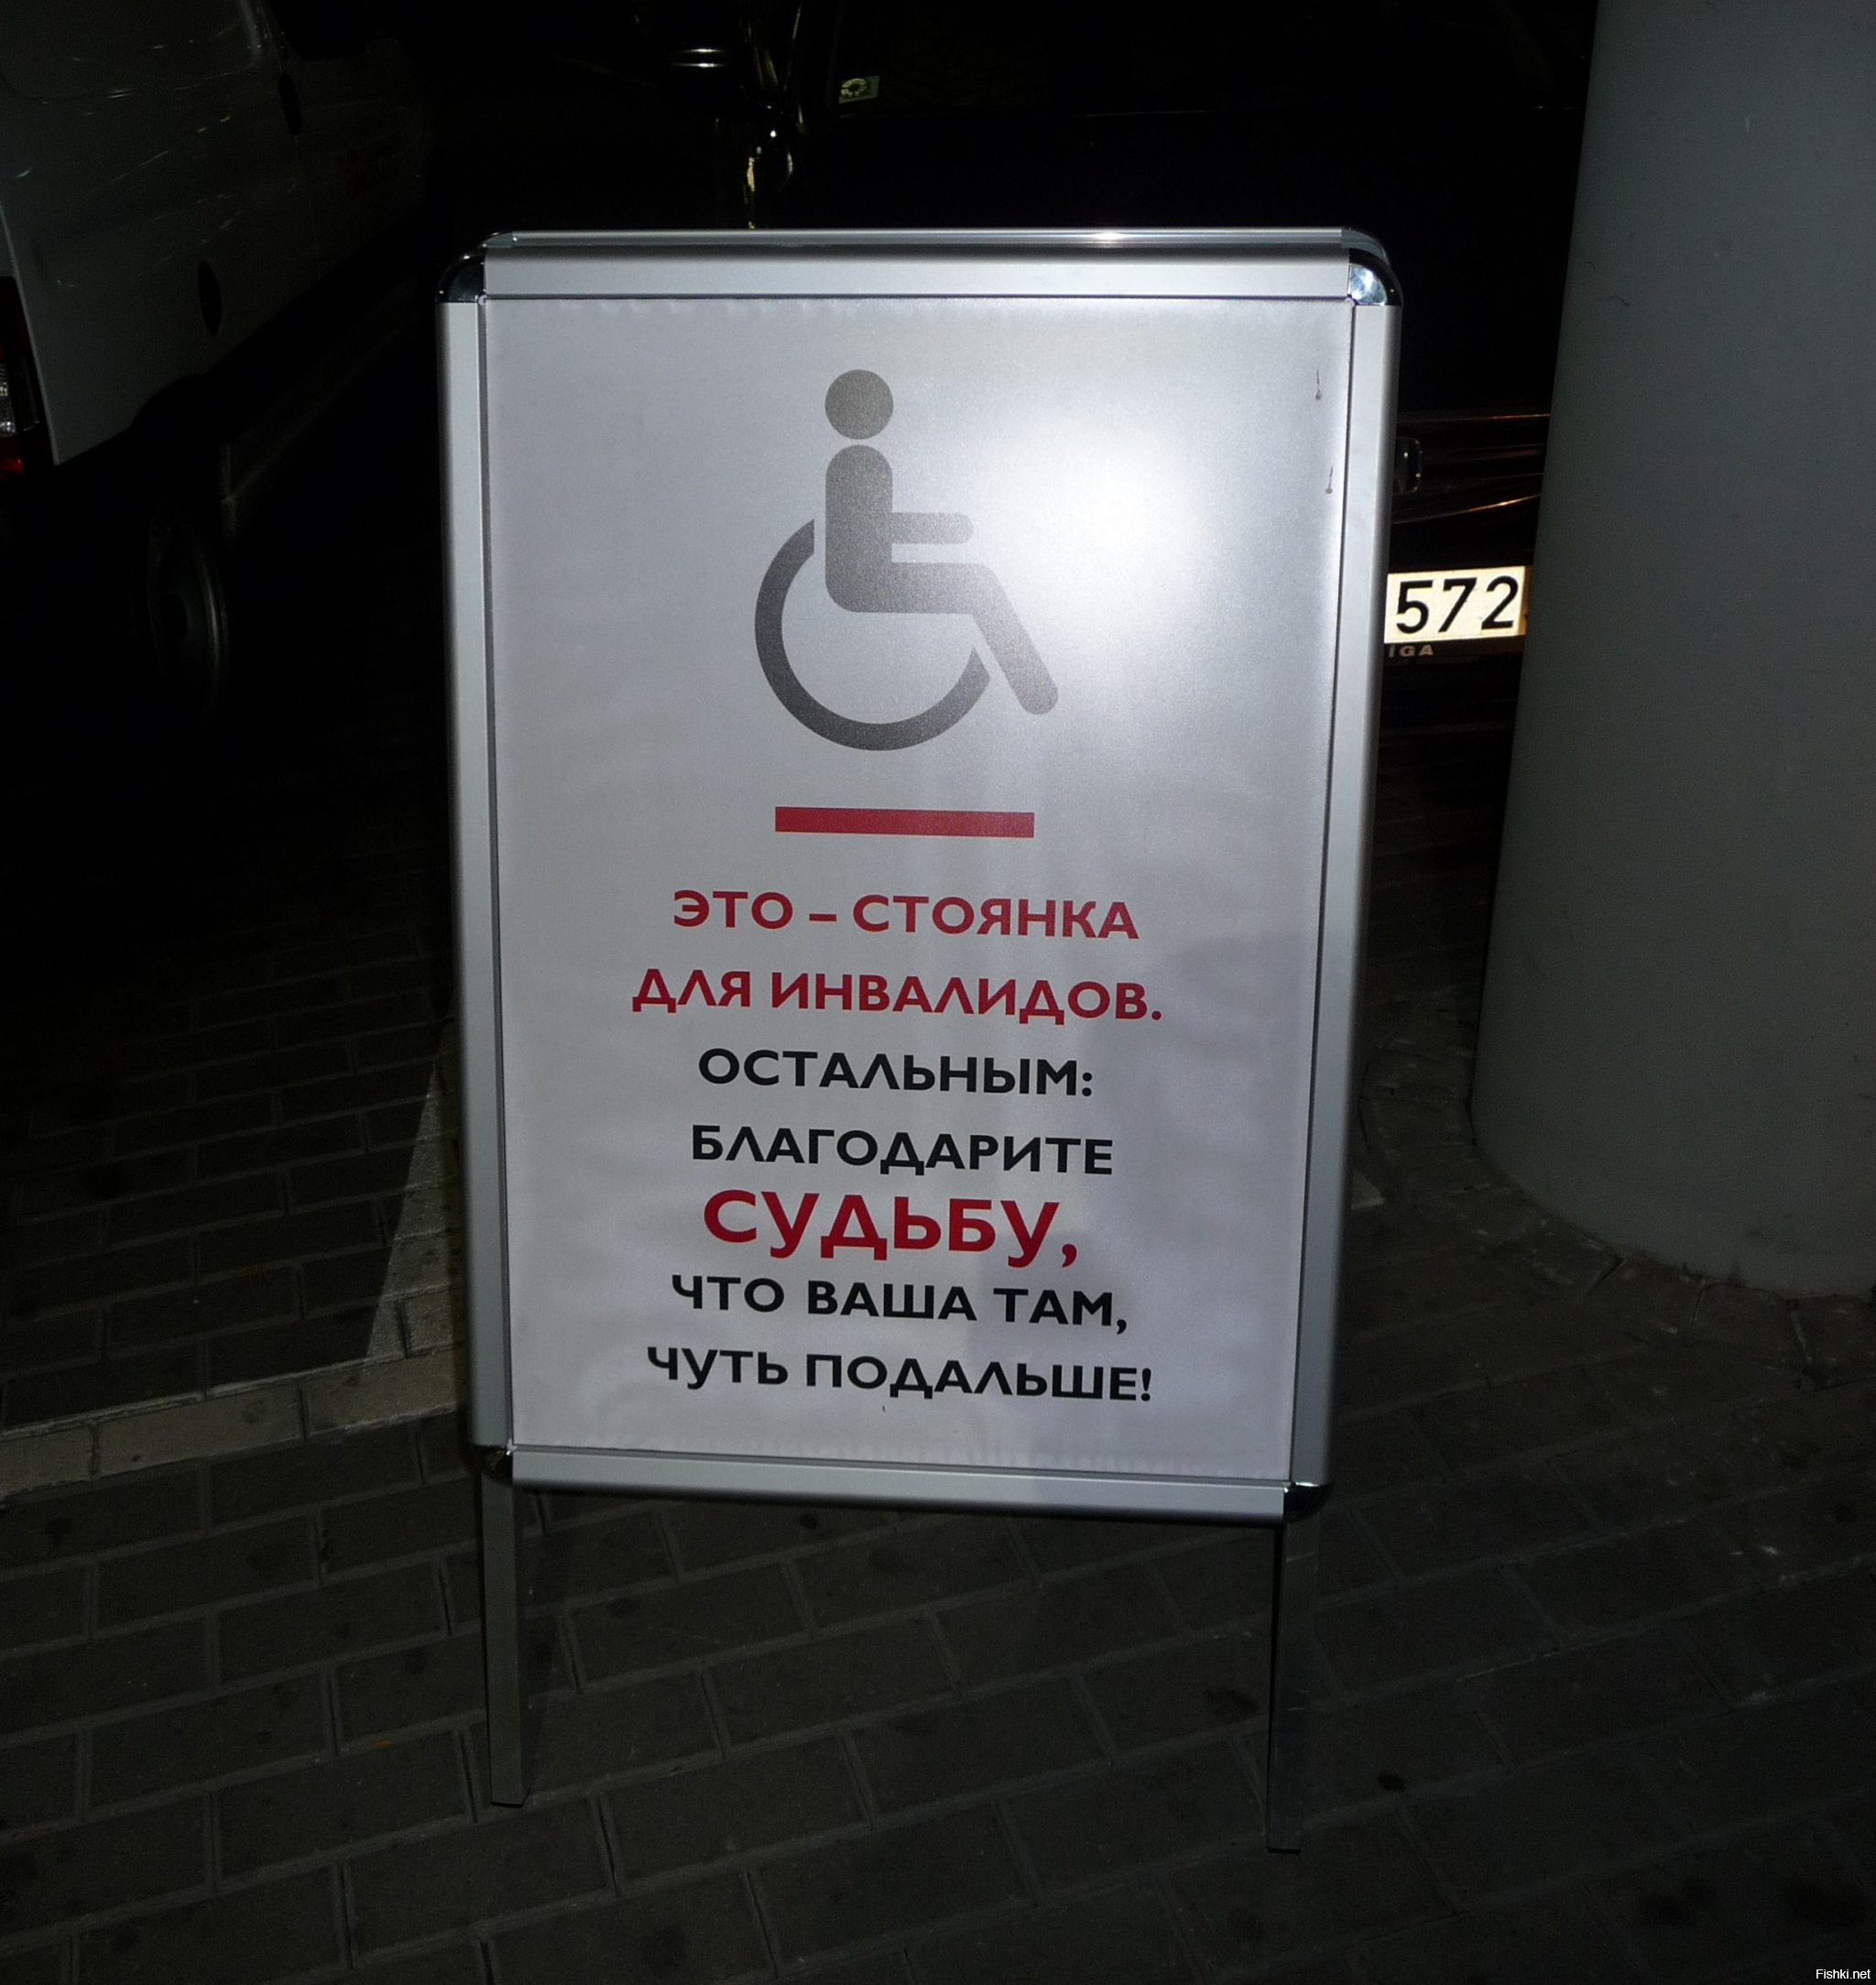 Объявление на парковку для инвалидов